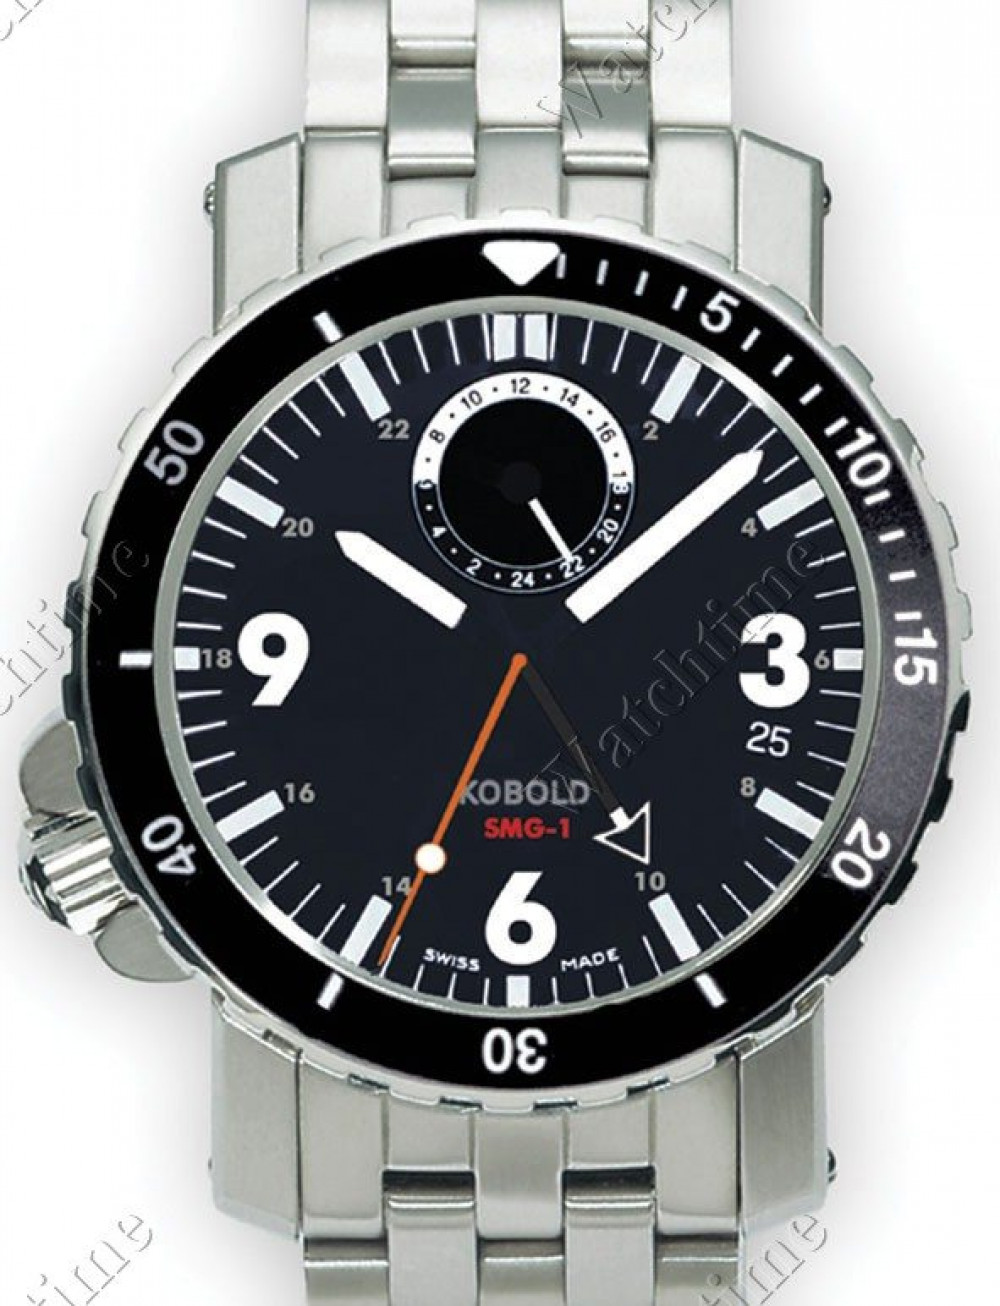 Zegarek firmy Kobold, model SMG-1